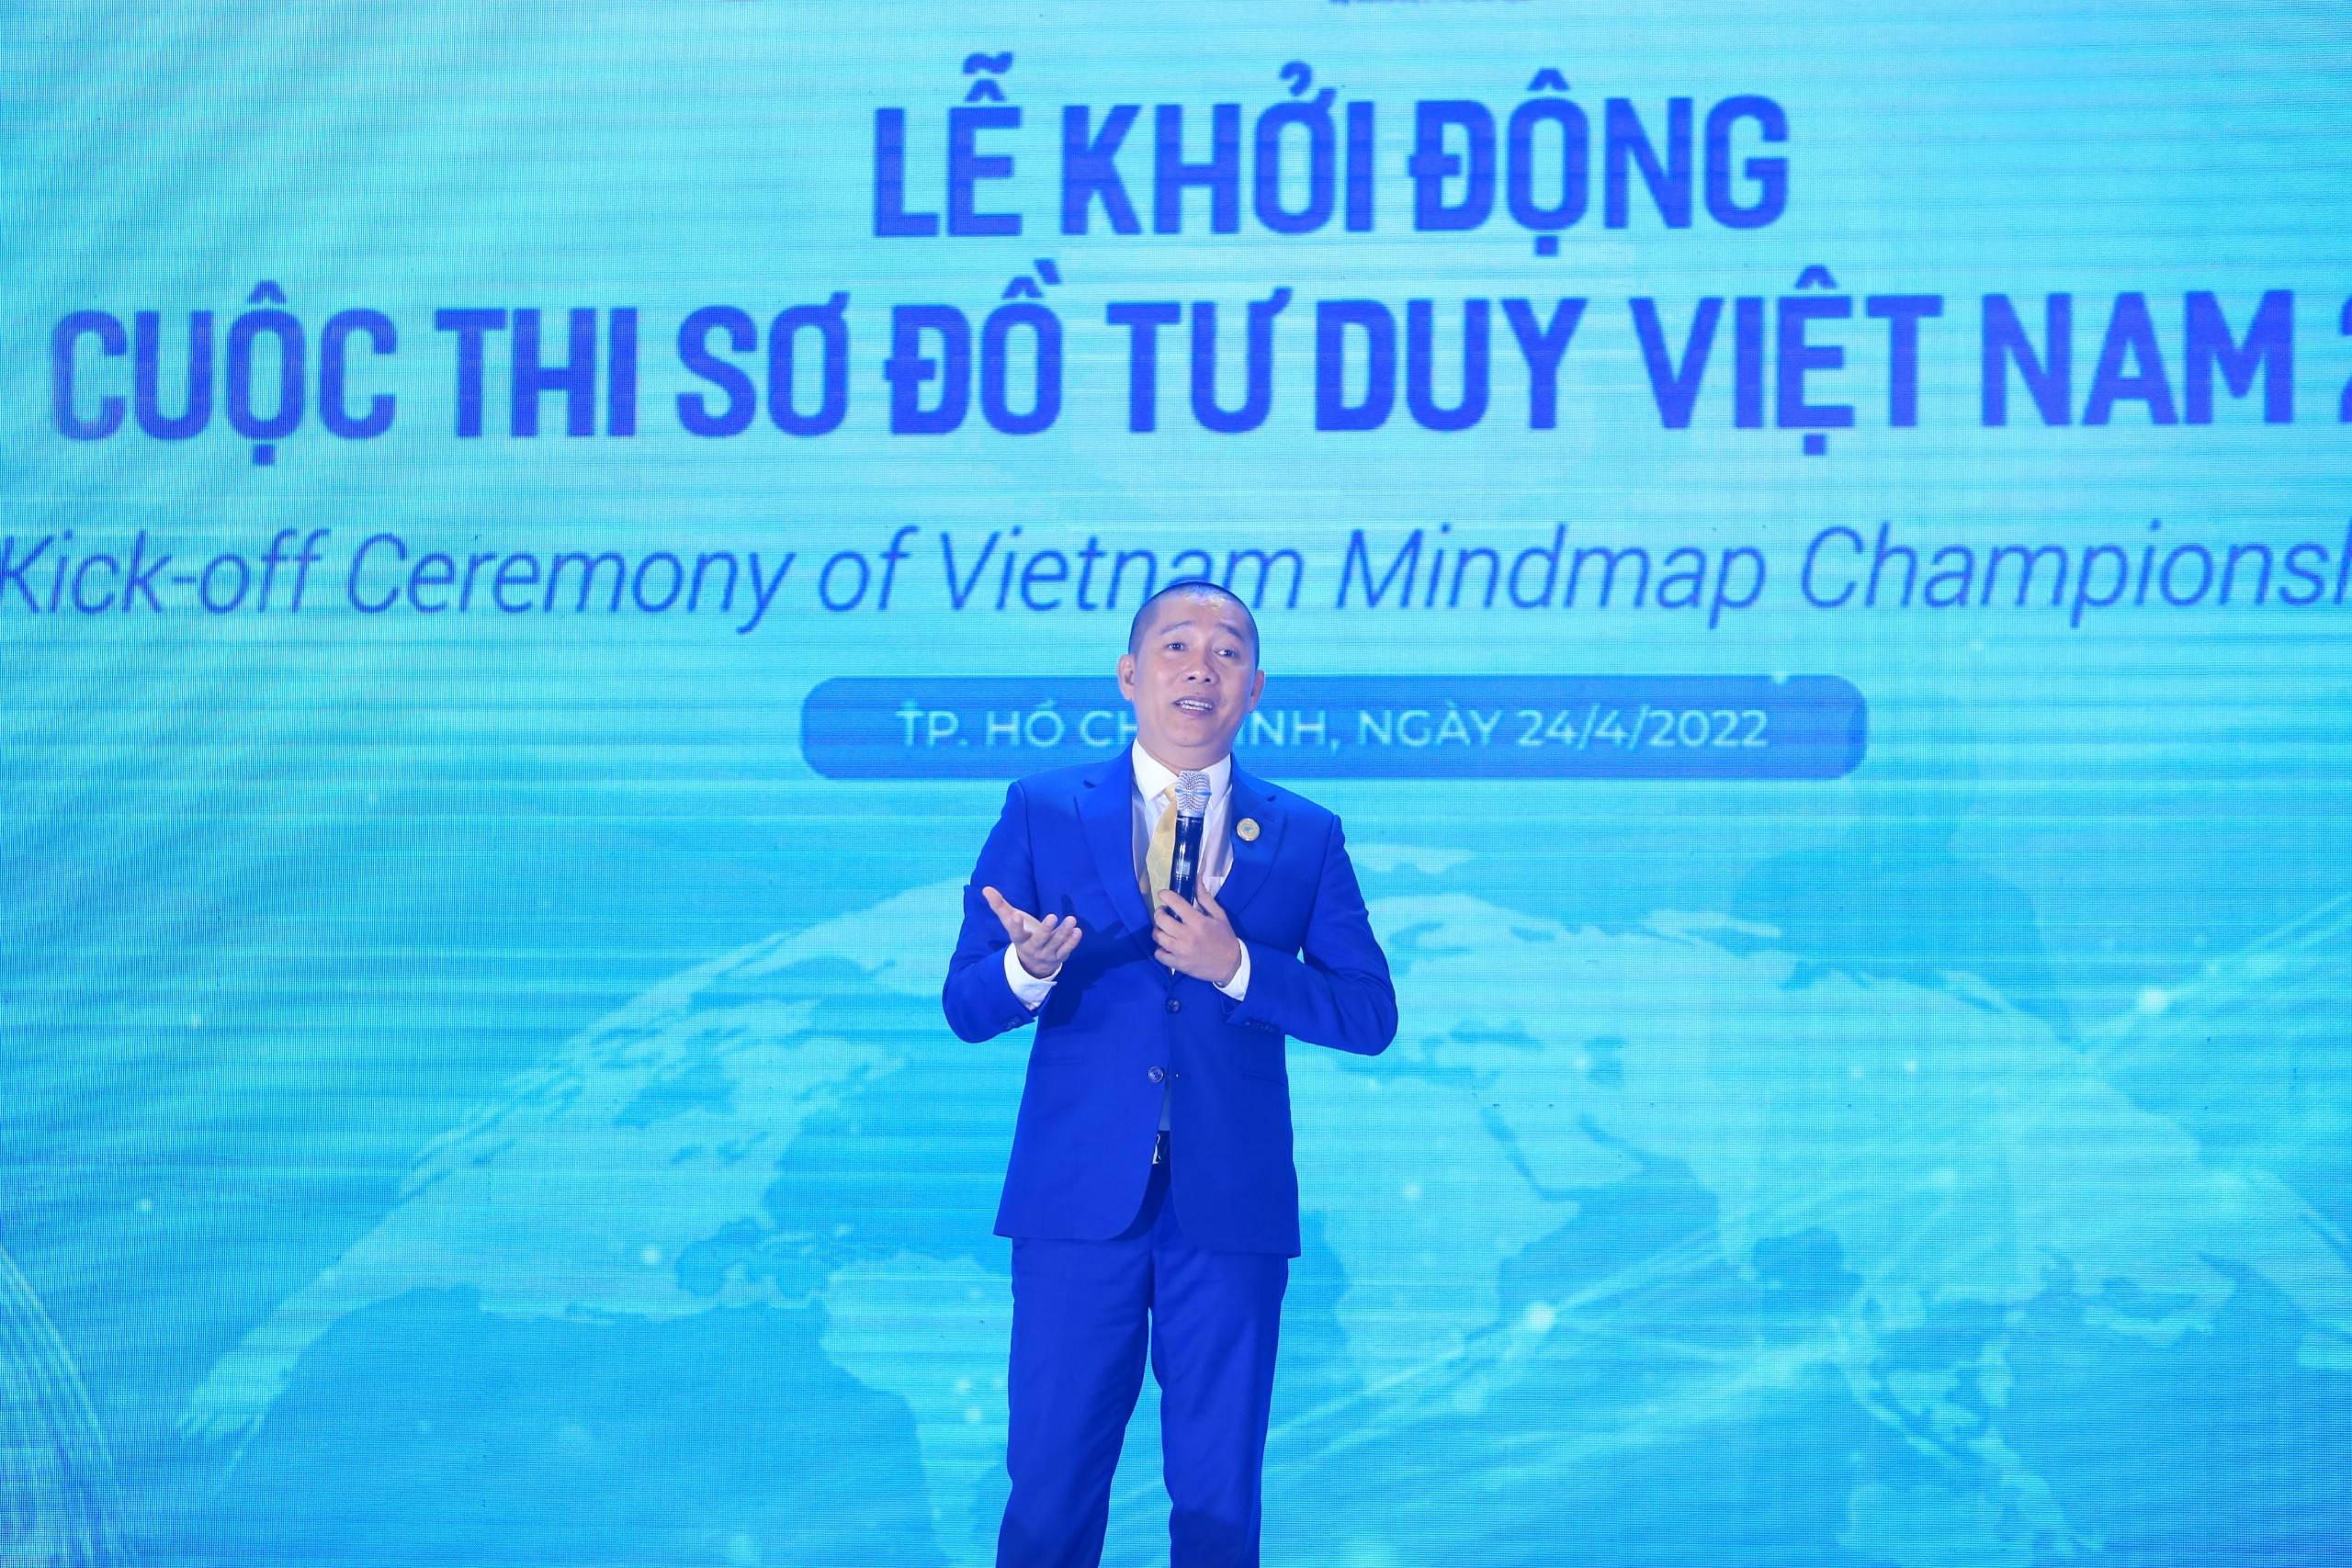 Trong sơ đồ tư duy Việt Nam 2022, bạn sẽ có cơ hội khám phá tùy chọn sáng tạo và đem lại những giá trị mới cho đất nước trong tương lai. Hãy xem ảnh để khám phá sự đầu tư có hiệu quả nhất trên sơ đồ tư duy này!